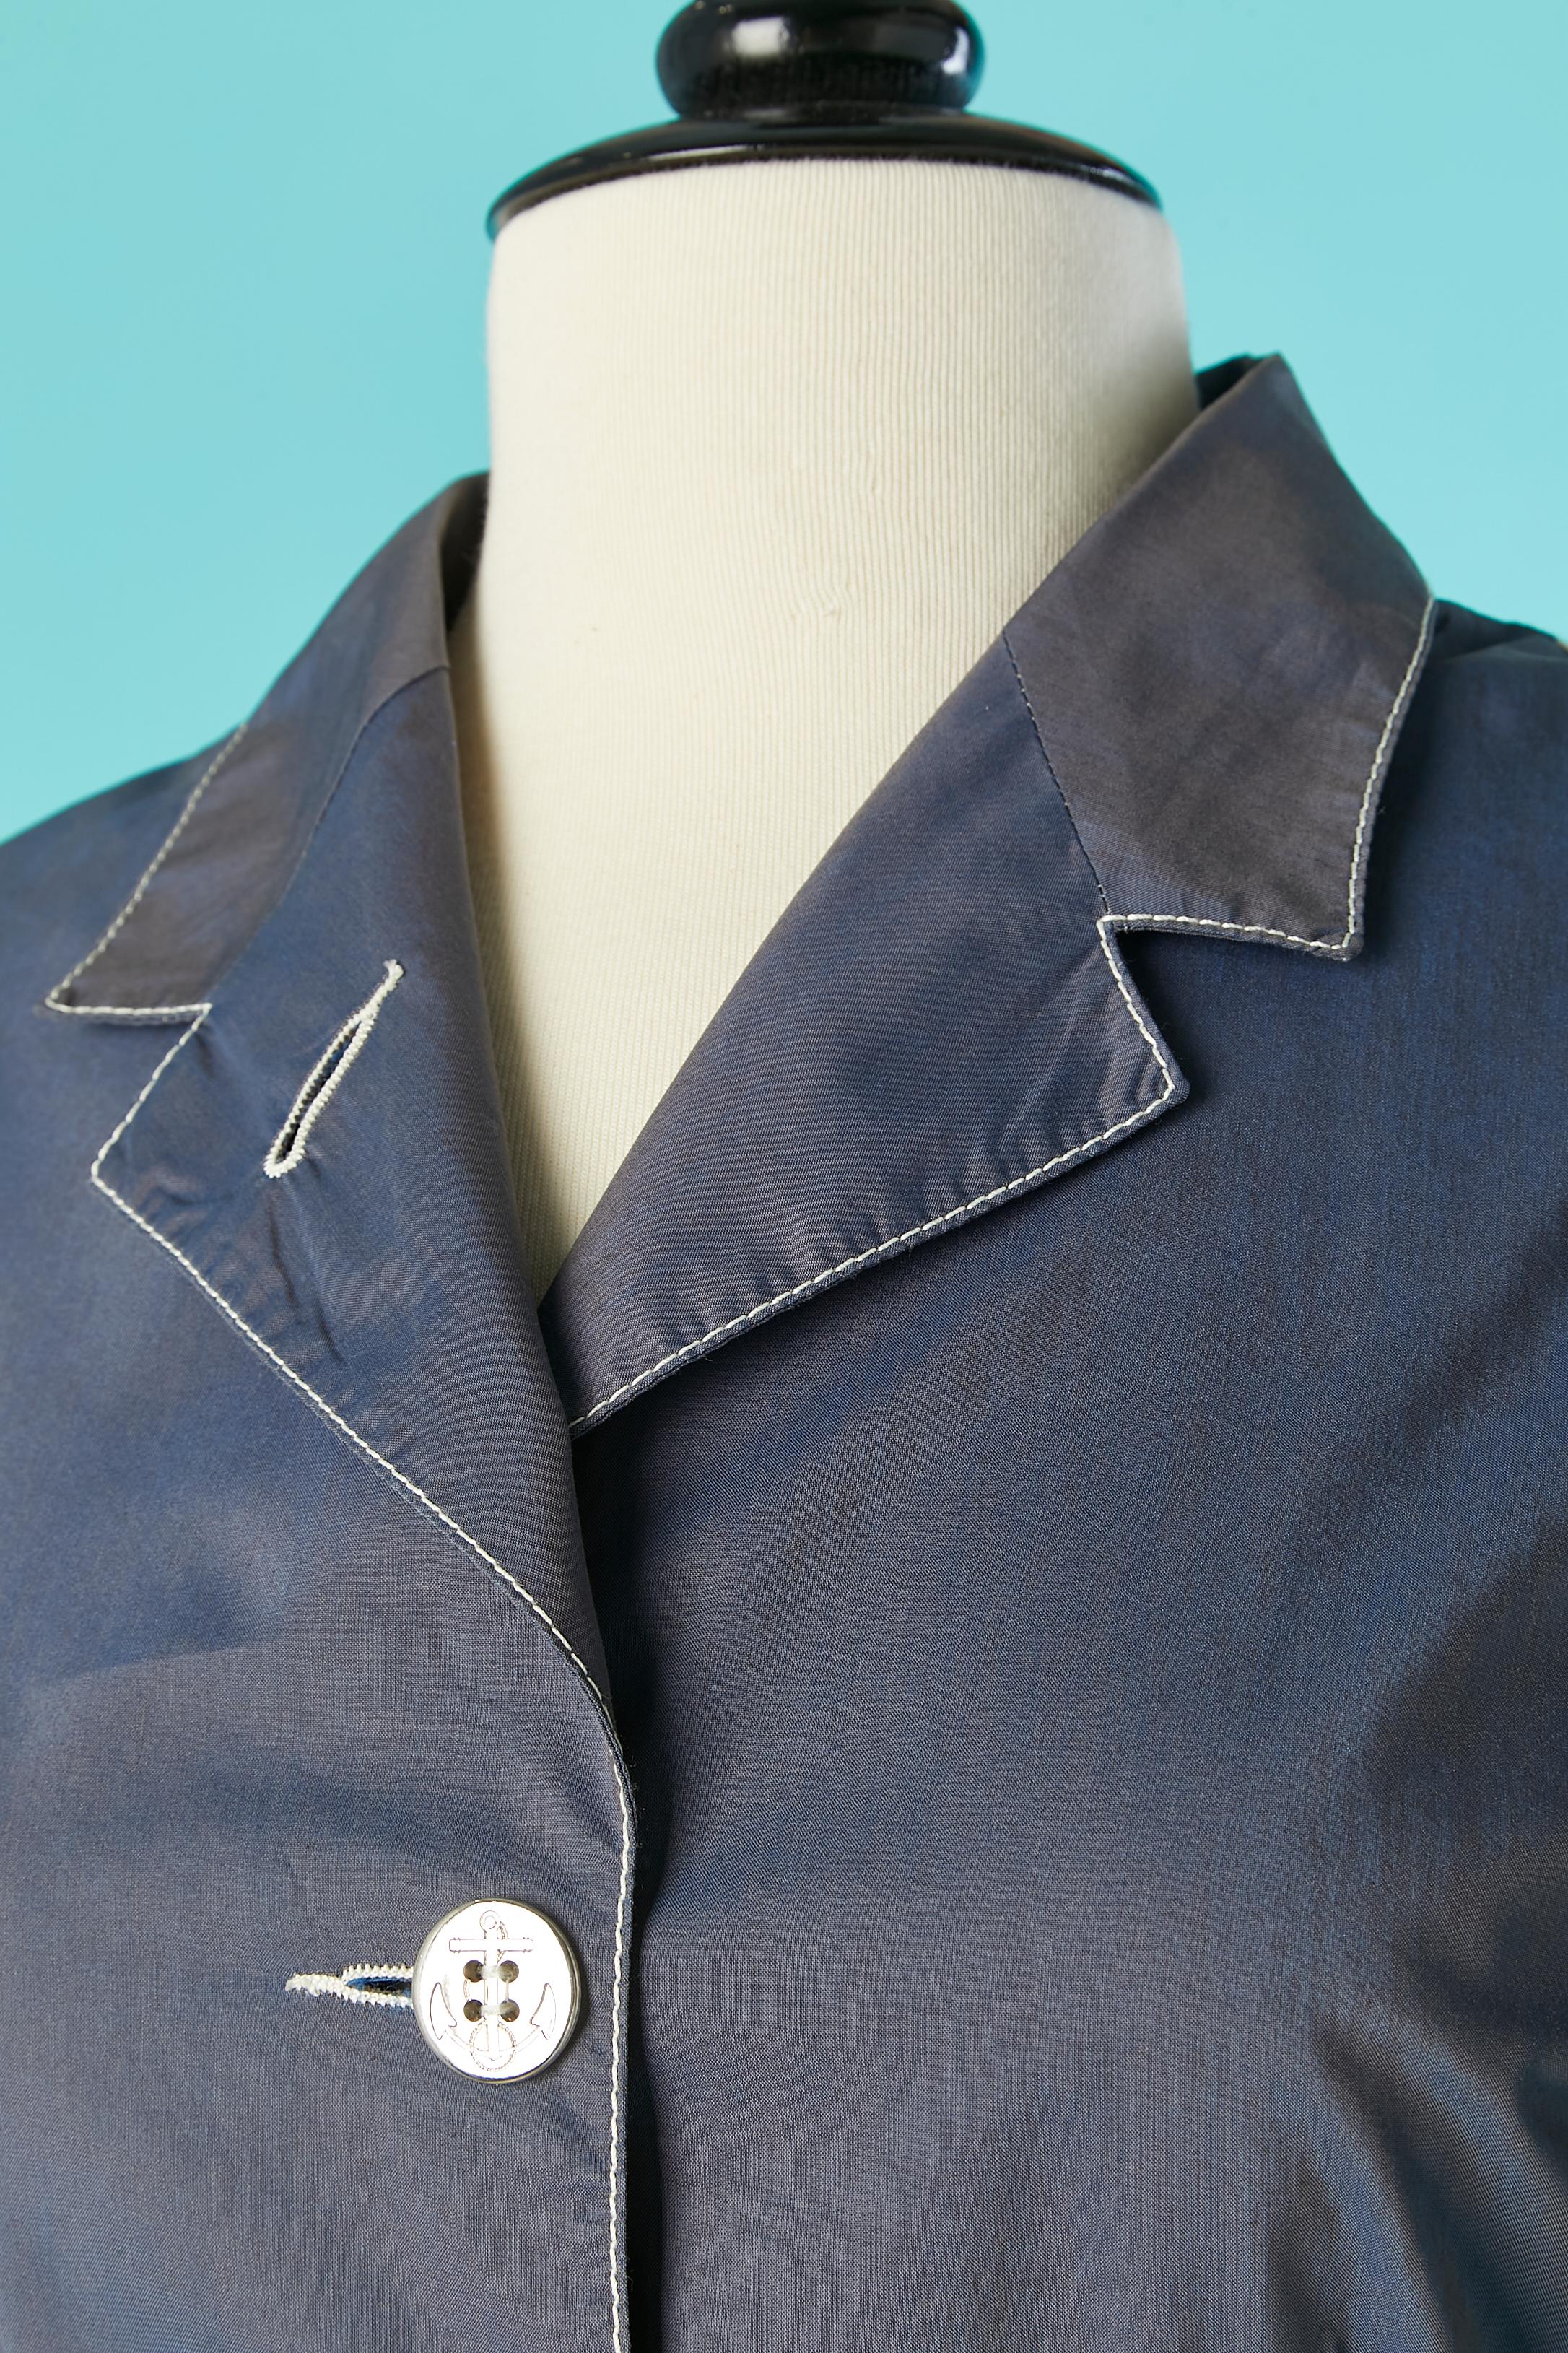 Veste à simple boutonnage avec dos rayé et boutons d'ancrage. Composition du tissu principal : 69% coton, 31% polyester. 
Pad d'épaule. 
TAILLE 42 (It) S 